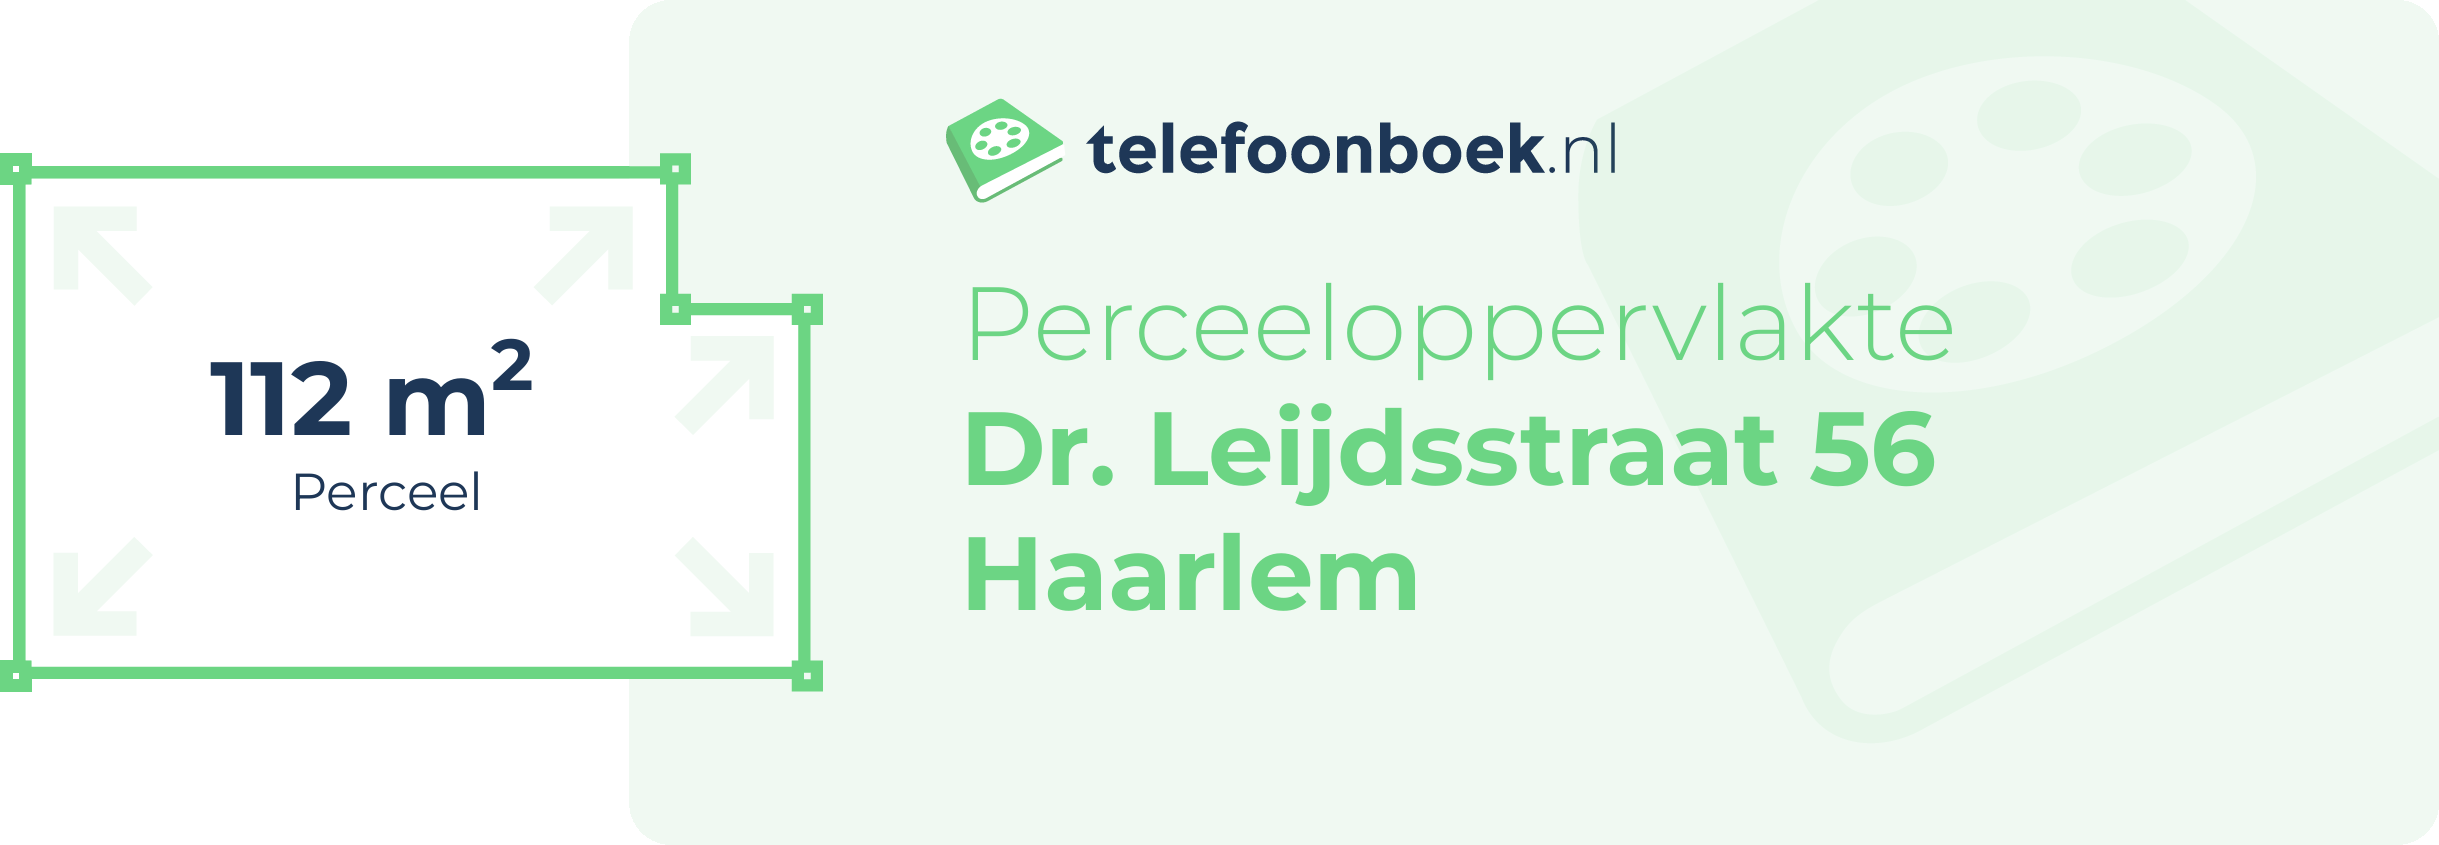 Perceeloppervlakte Dr. Leijdsstraat 56 Haarlem